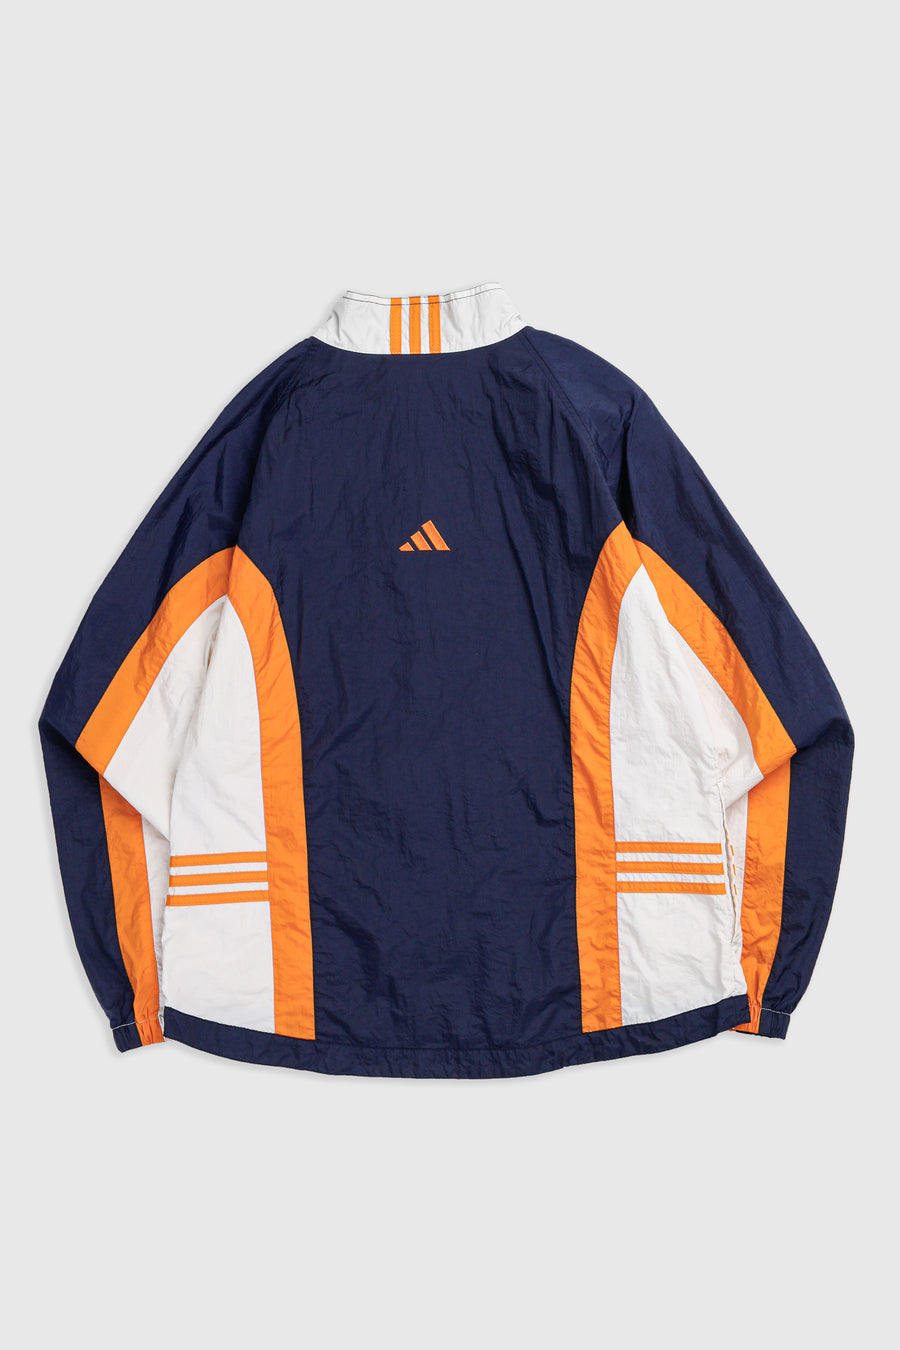 Vintage Adidas Windbreaker Jacket - L